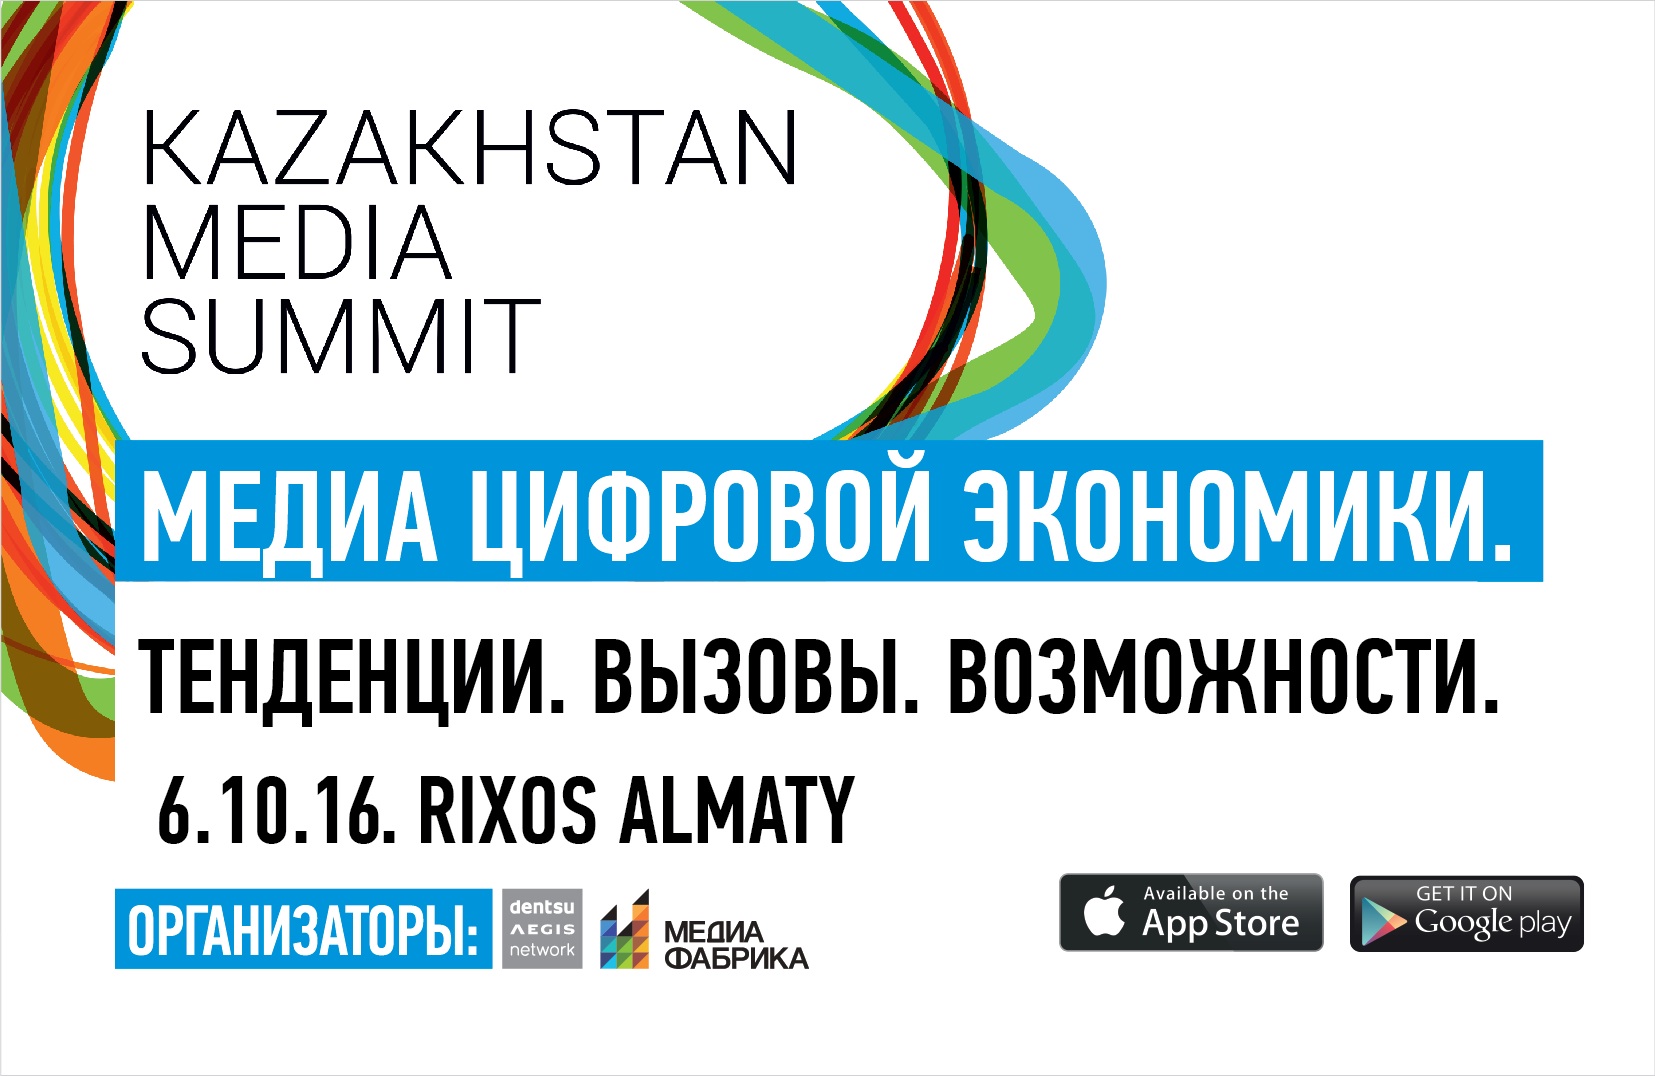 Основатель телеканала «Дождь» расскажет о монетизации СМИ без рекламы на Казахстанском медиа саммите